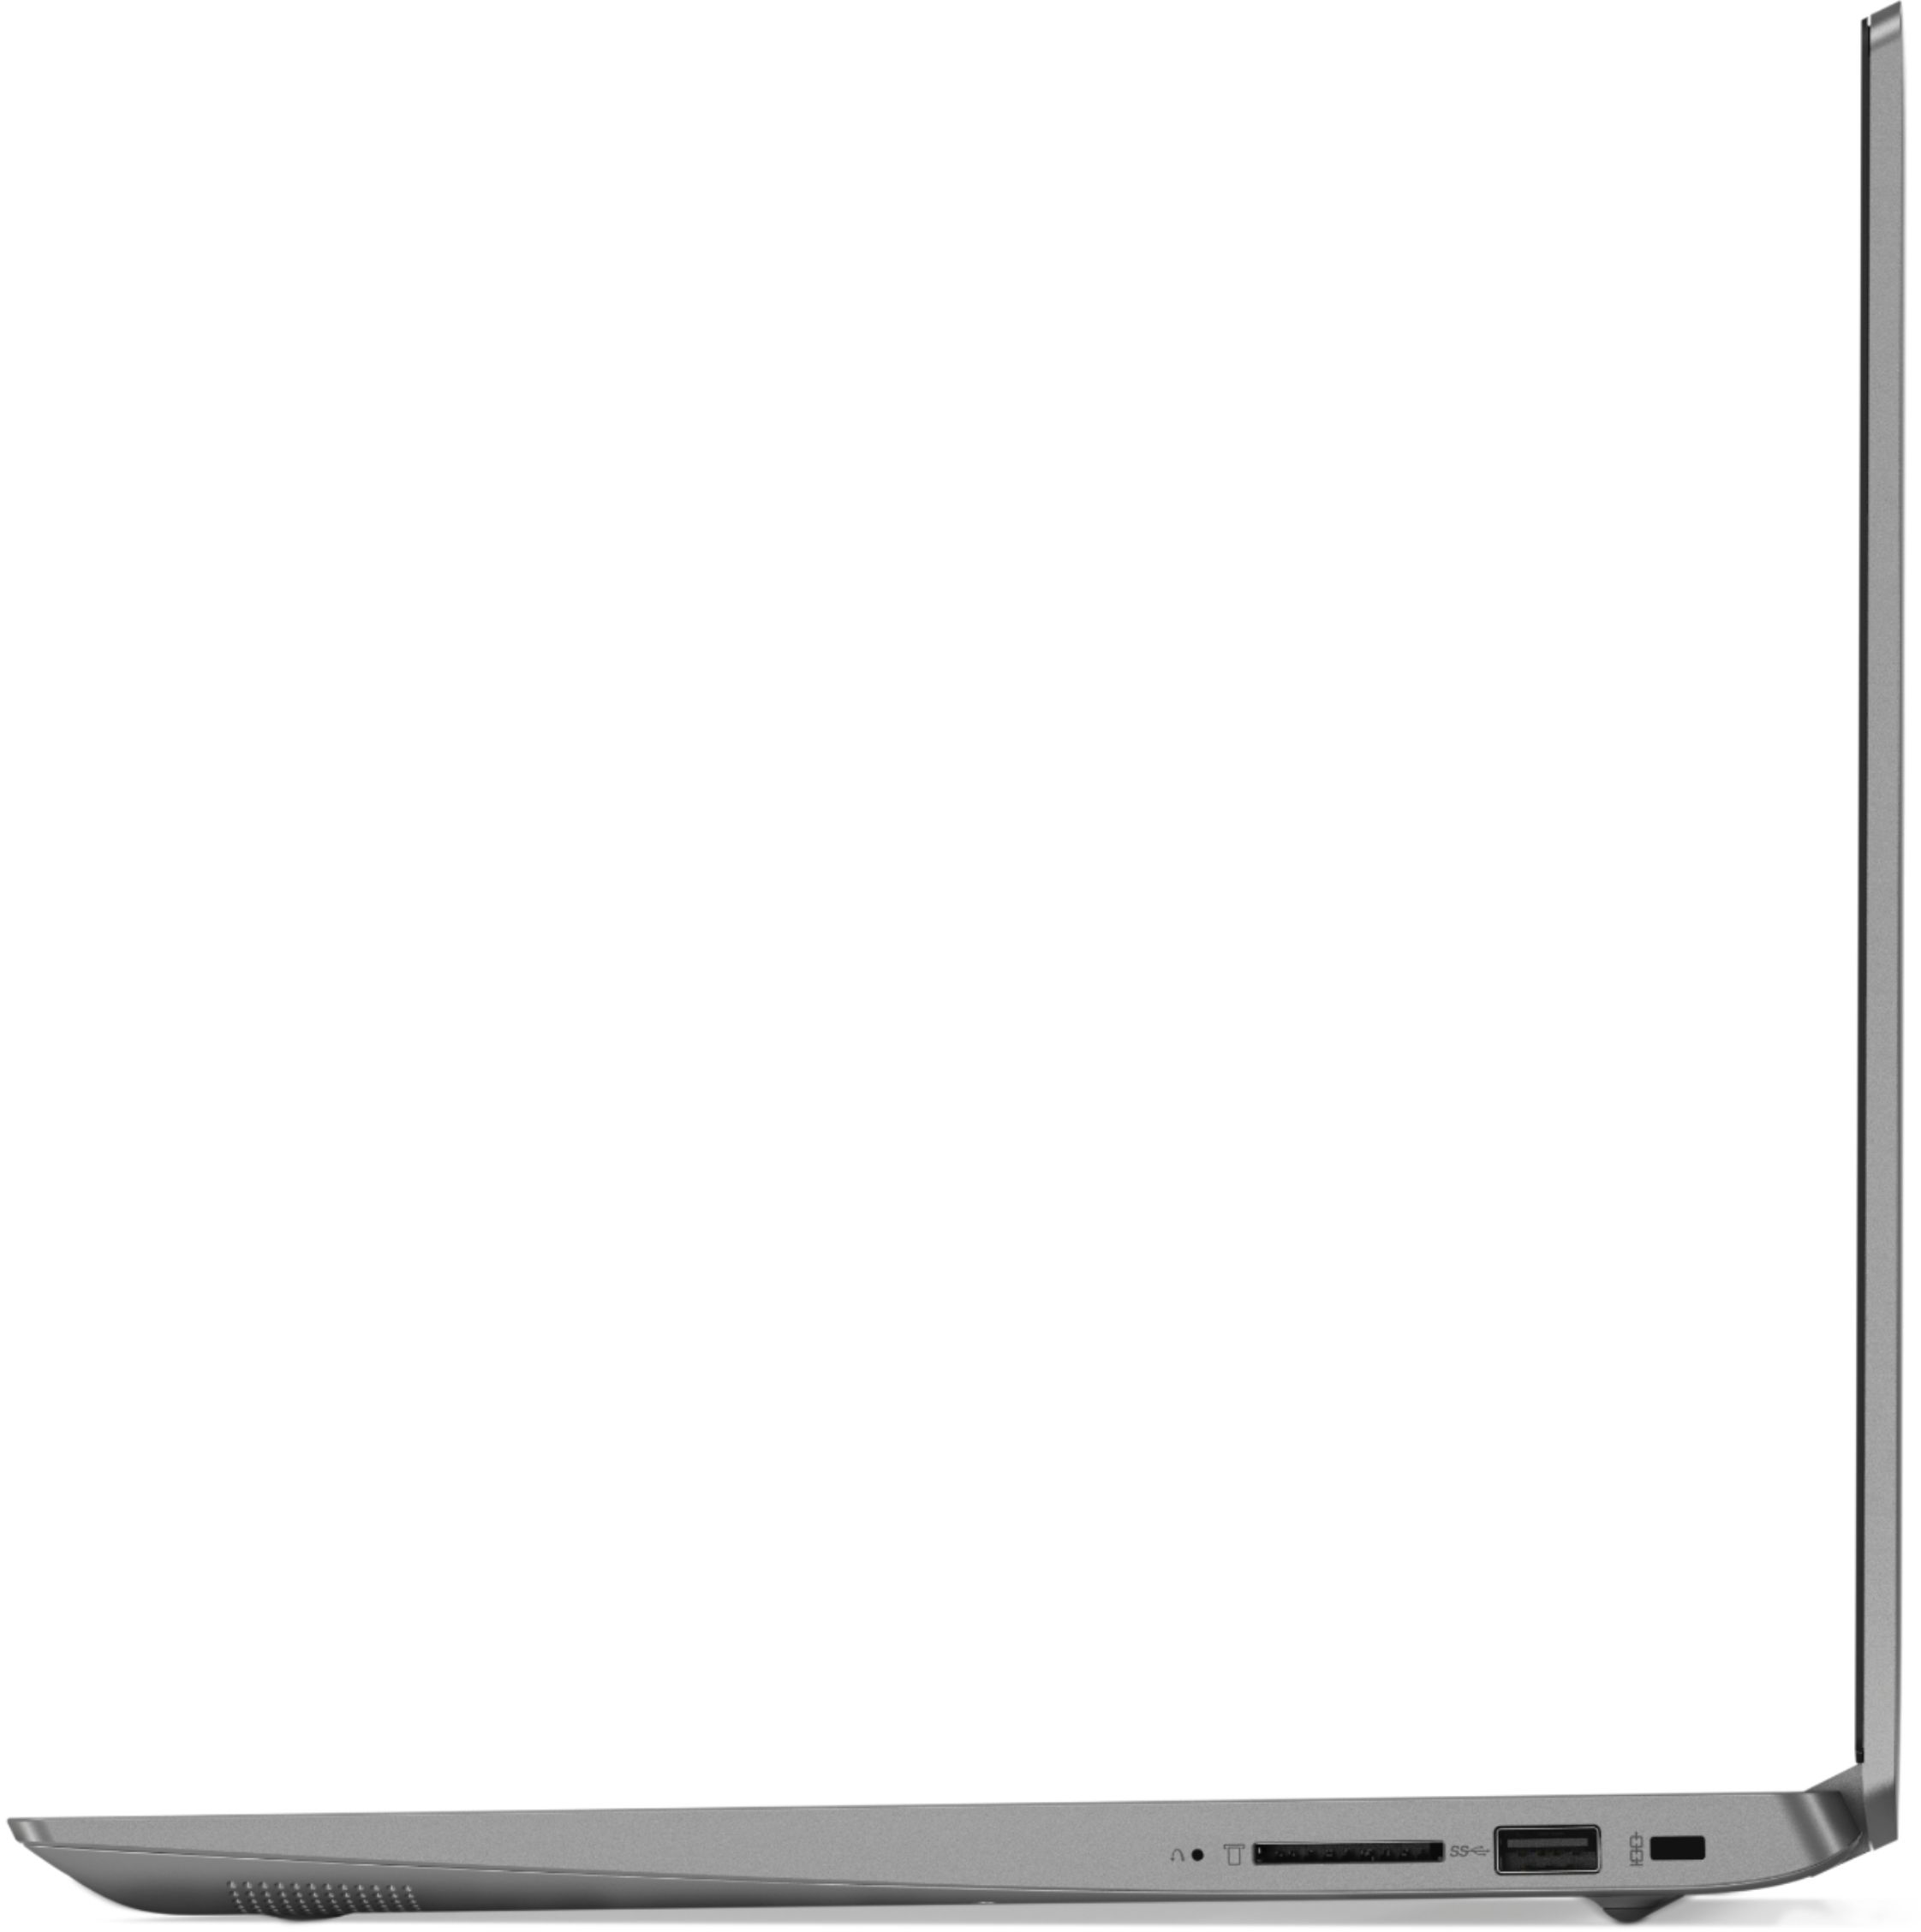 PC/タブレット ノートPC Best Buy: Lenovo IdeaPad 330S 15.6